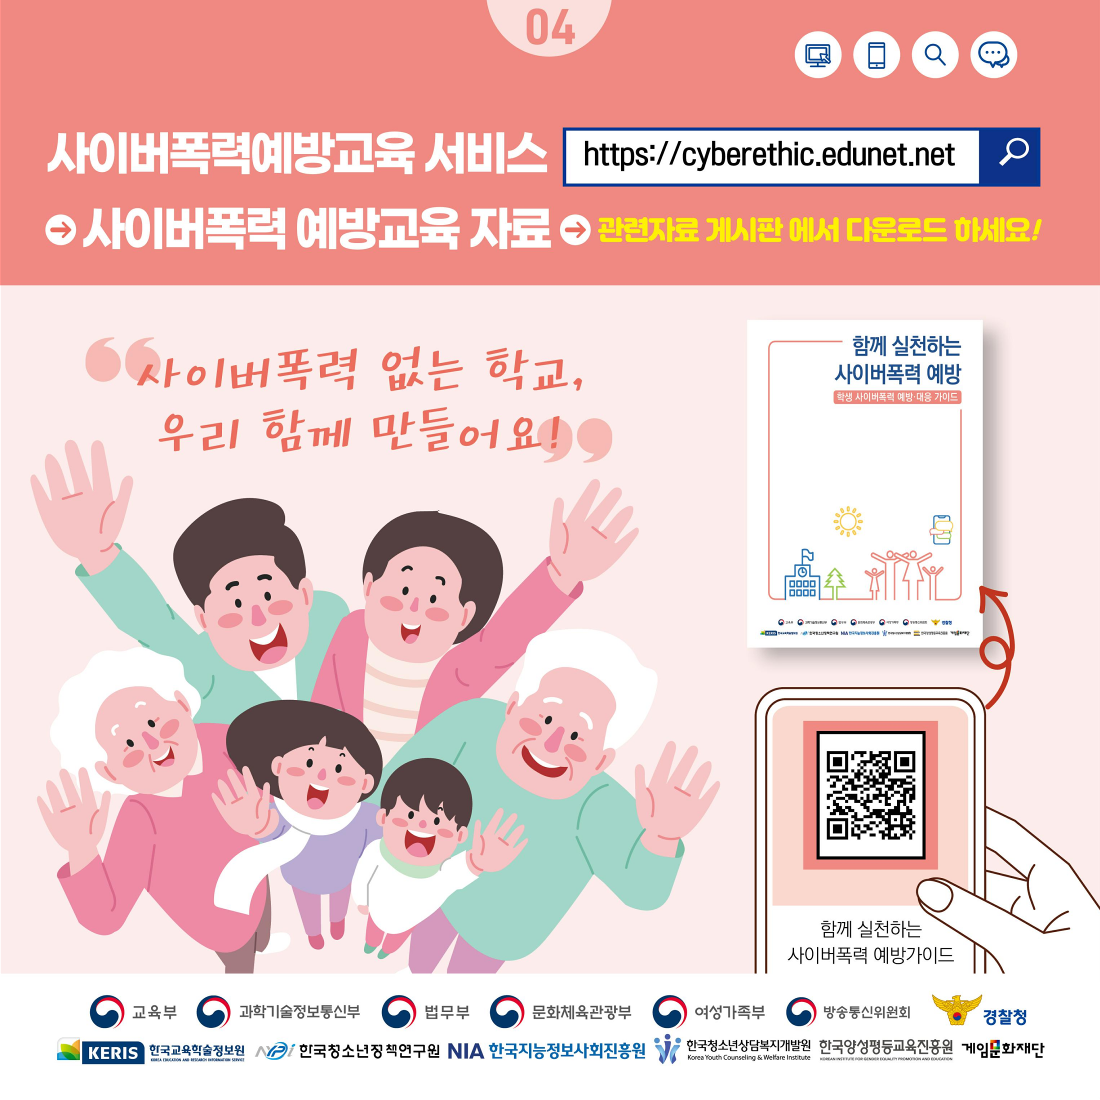 충청북도교육청 학교자치과_학생 사이버폭력 예방 대응 카드 뉴스_5